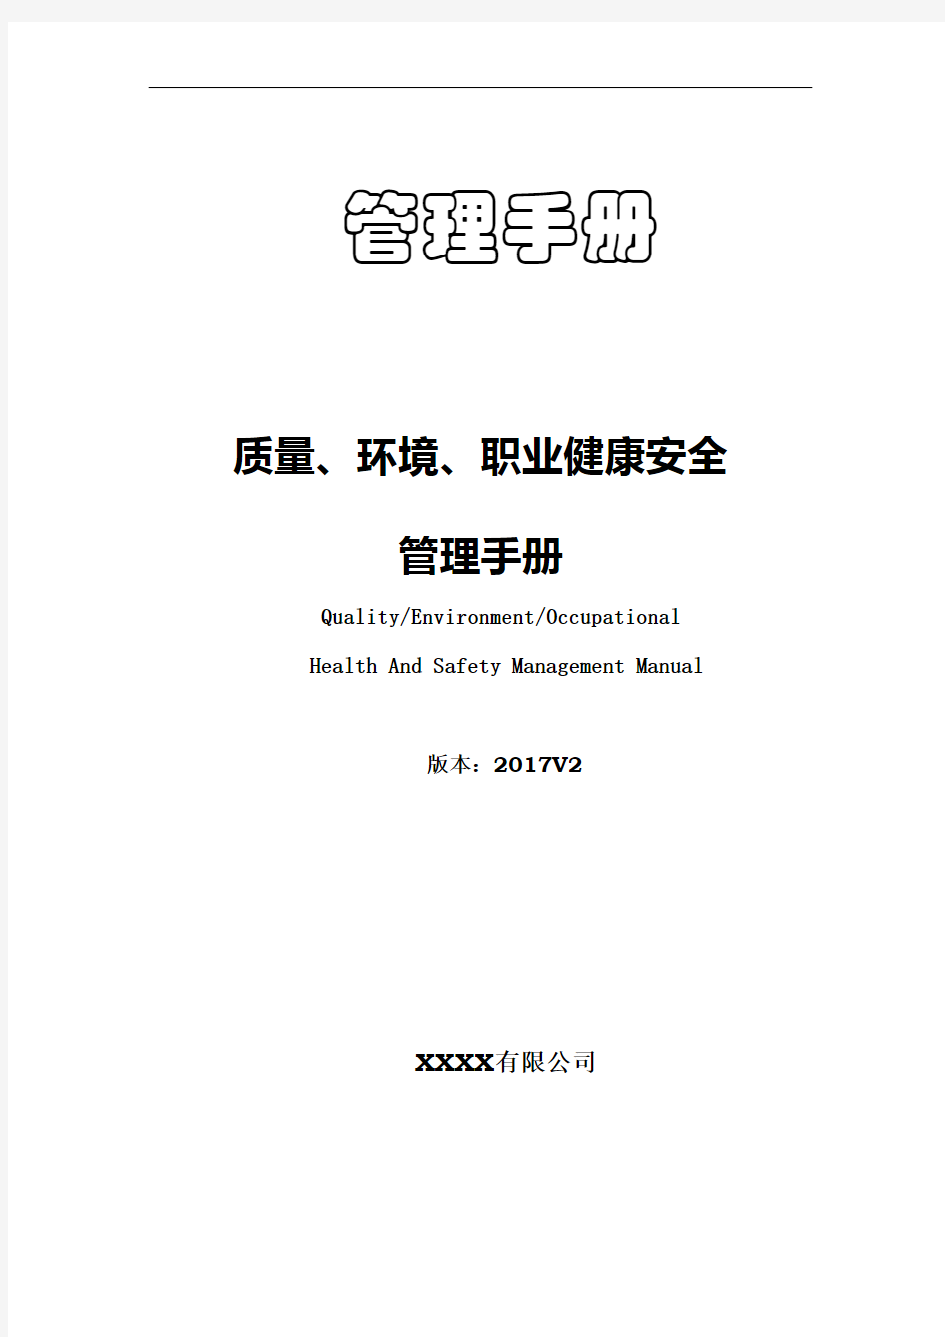 2015版质量环境职业健康安全管理手册(三标合一)